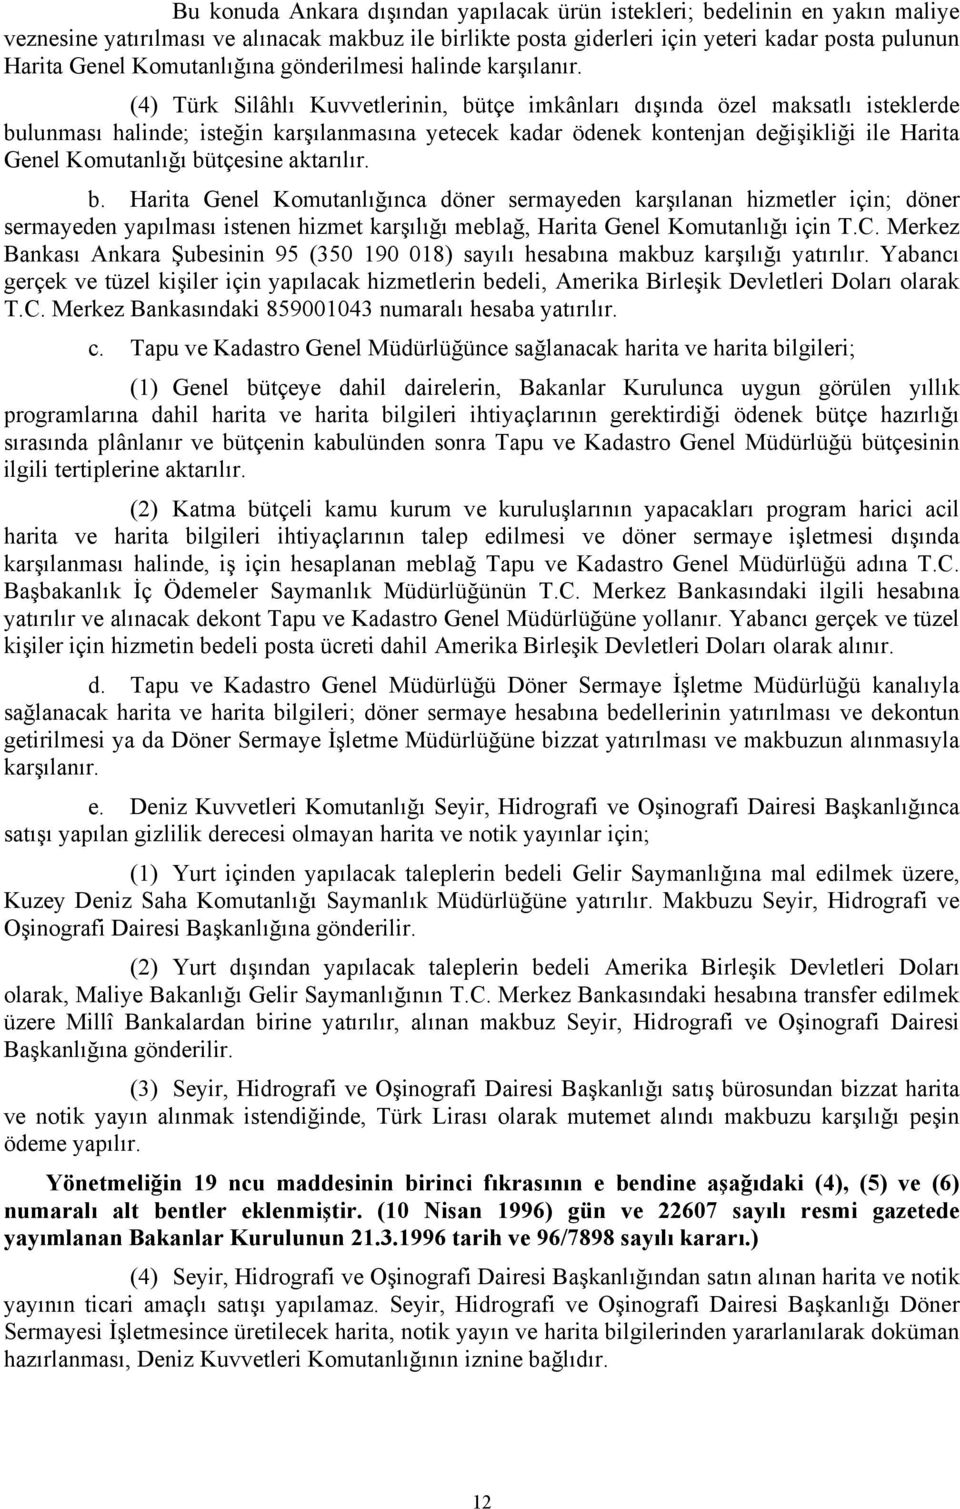 (4) Türk Silâhlı Kuvvetlerinin, bütçe imkânları dışında özel maksatlı isteklerde bulunması halinde; isteğin karşılanmasına yetecek kadar ödenek kontenjan değişikliği ile Harita Genel Komutanlığı